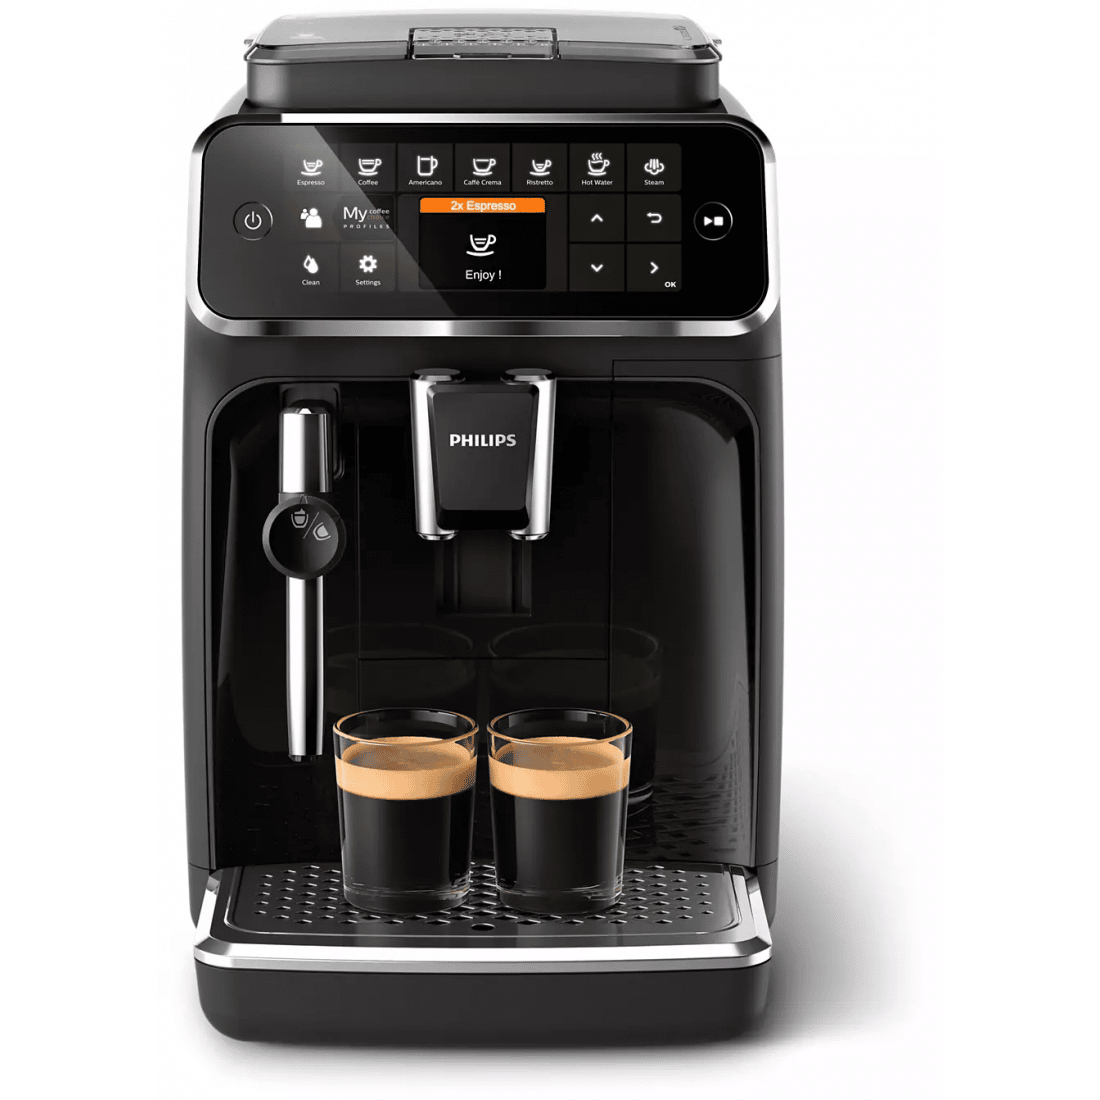 Philips Full Auto Espresso Machine 4300 Series à¹à¸à¸£à¸·à¹à¸à¸à¸à¸à¸?à¸²à¹?à¸ à¹à¸à¸ªà¹à¸à¸£à¸ªà¹à¸à¹ ...